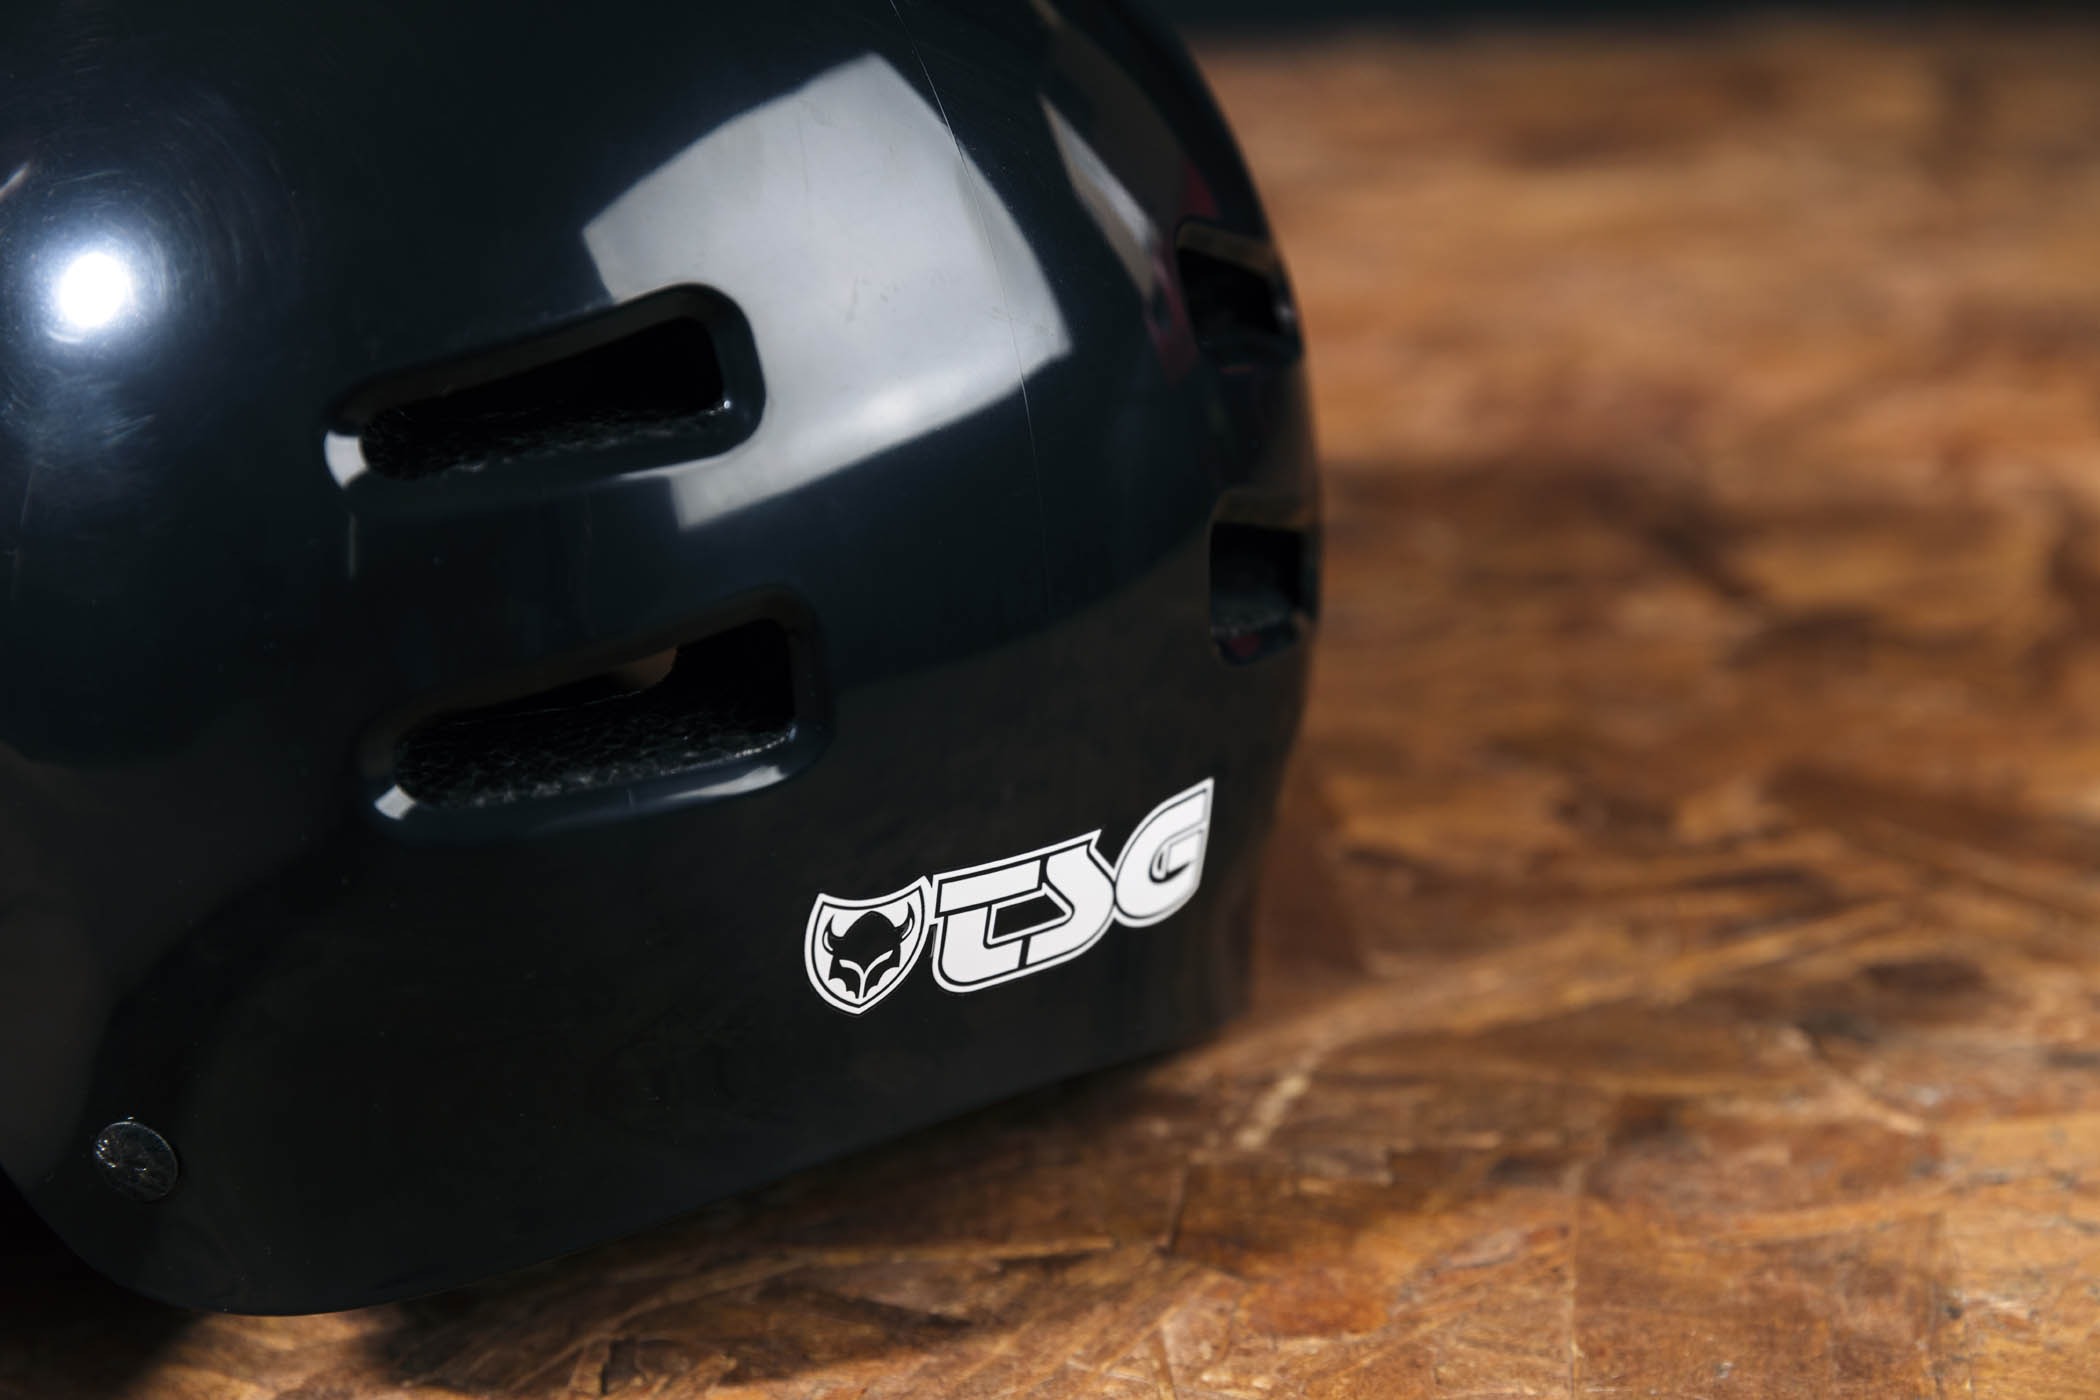 TSG Skate/BMX Helmet Injected W. TSG Helmets